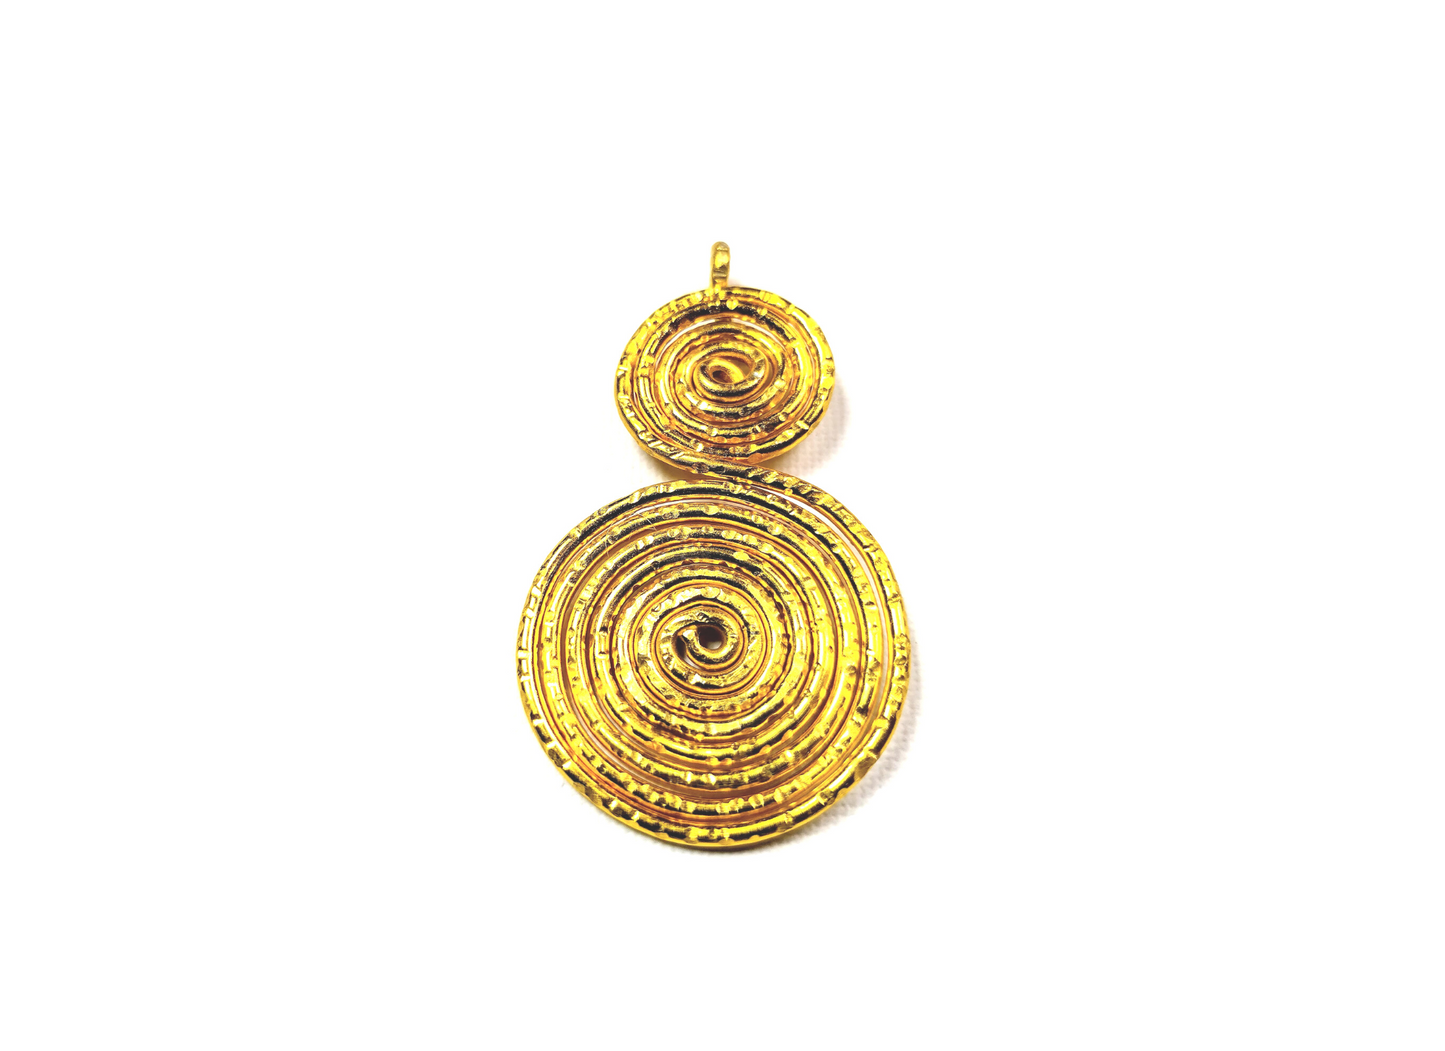 UNISEX Gold-Brass Spiral Necklace-Pendant. DESIGNER STATEMENT PIECE